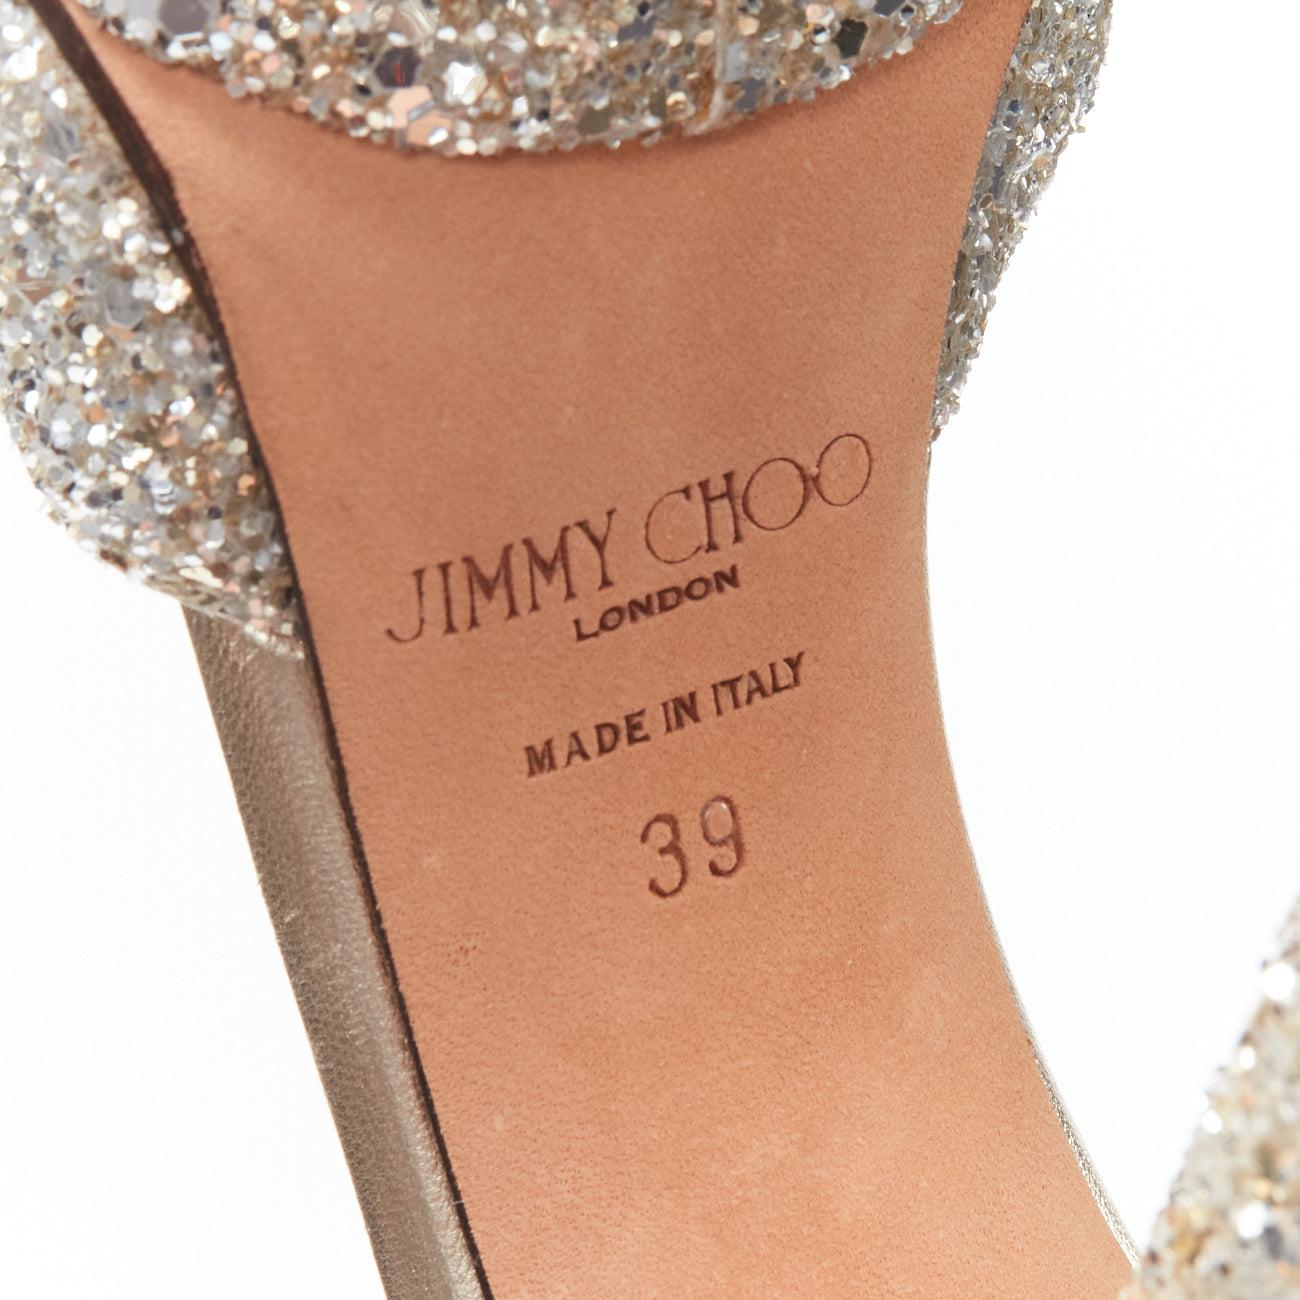 JIMMY CHOO silver glitter open toe ankle strap platform heels EU39 5